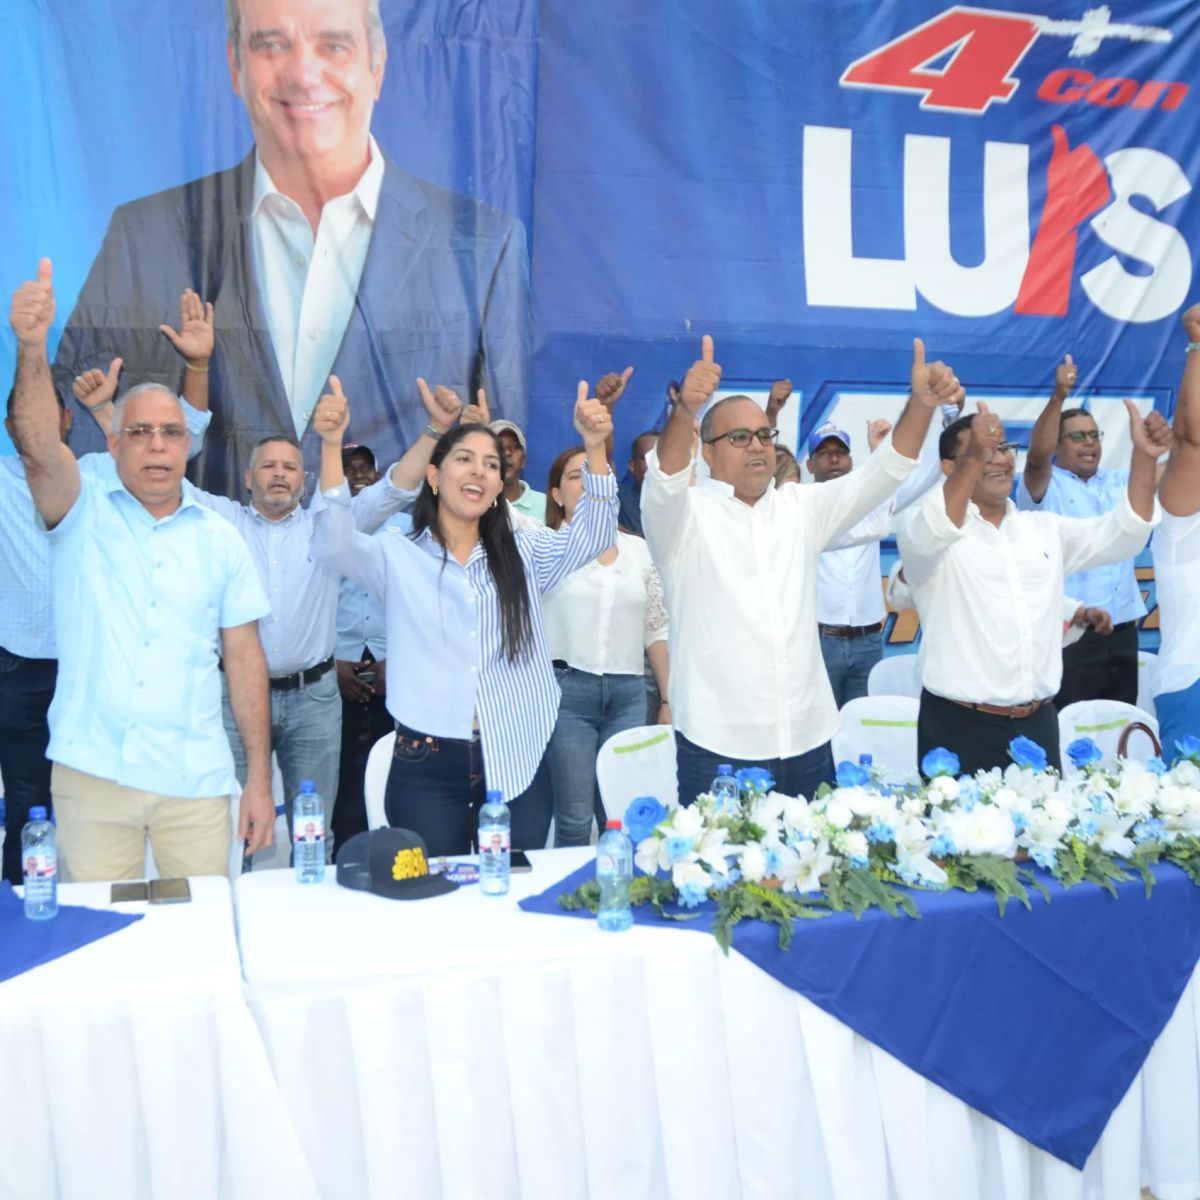 Ney Rodríguez candidato a senador del PRM Inaugura comando de campaña –  (República Dominicana)